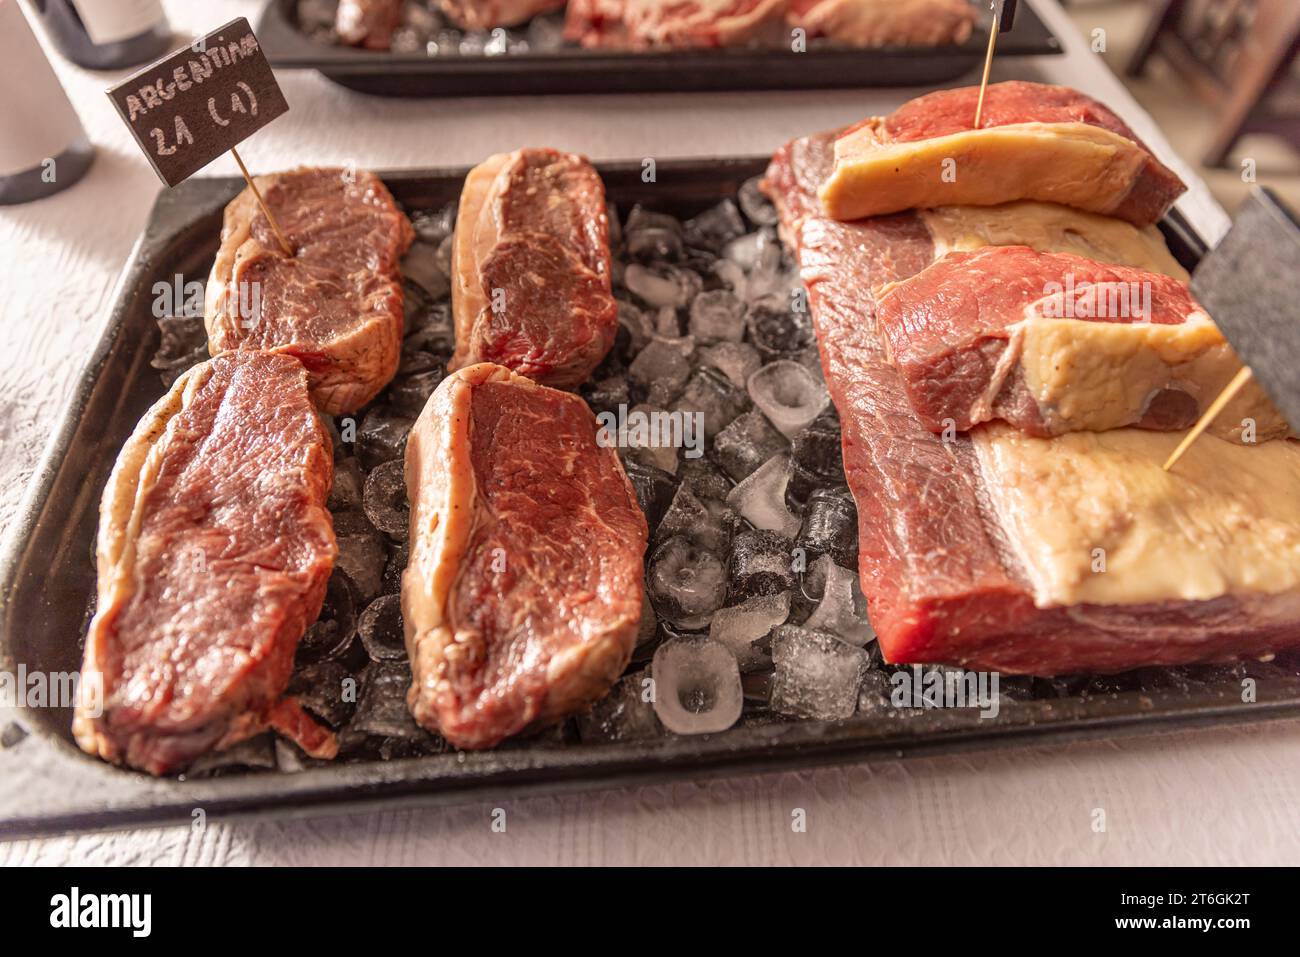 Tablett mit rohem Fleisch, in große Stücke geschnitten und auf ein Eisbett gelegt Stockfoto